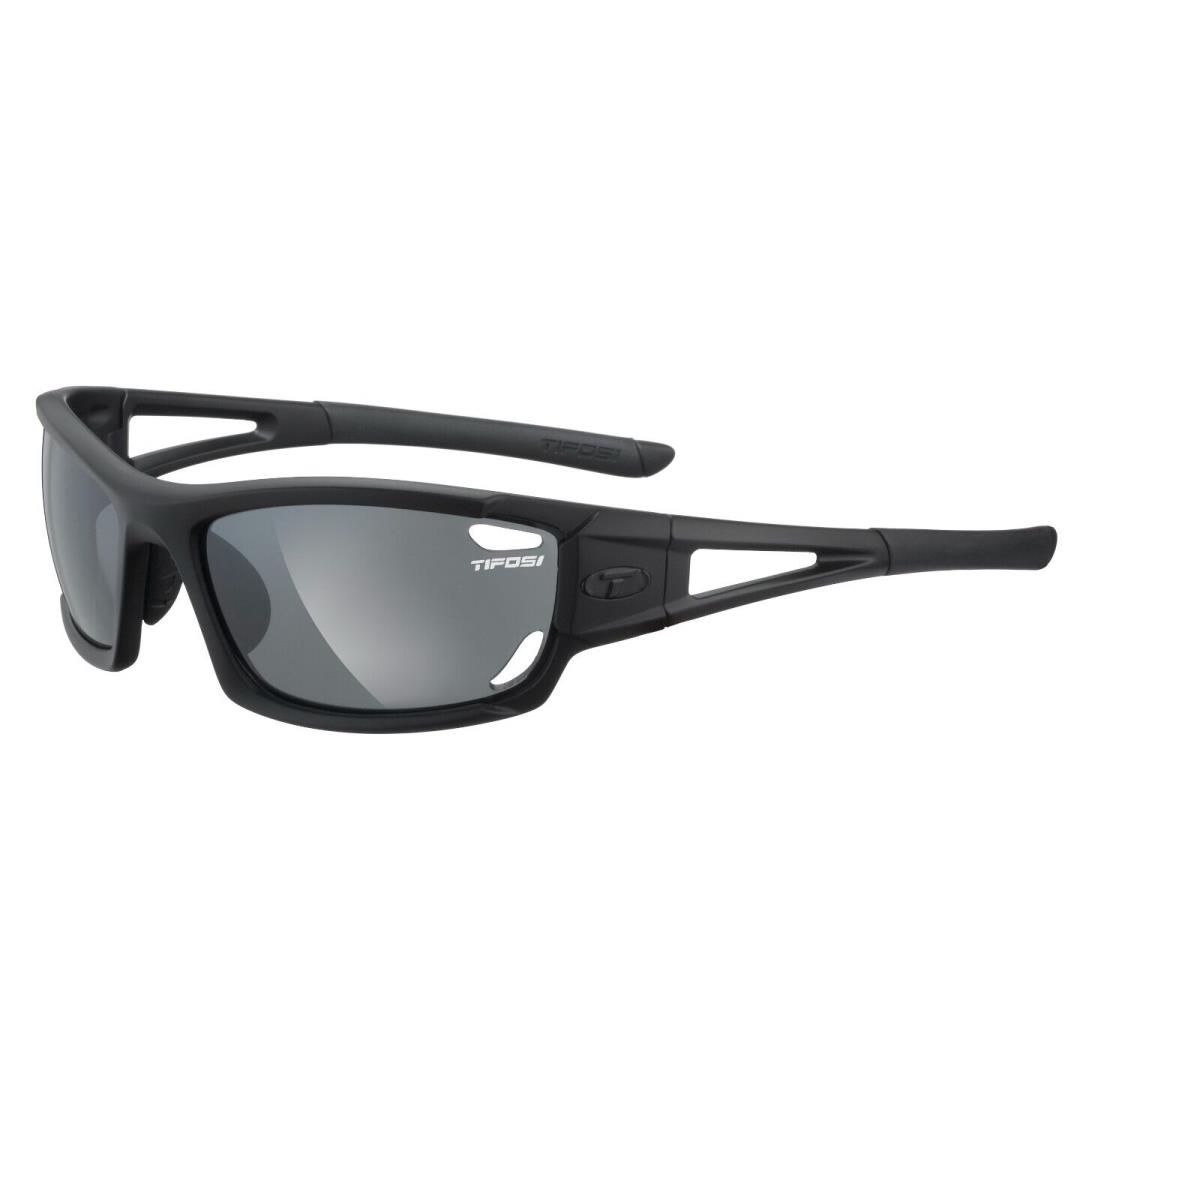 Tifosi Dolomite 2.0 Matte Black Interchangeable Sunglasses